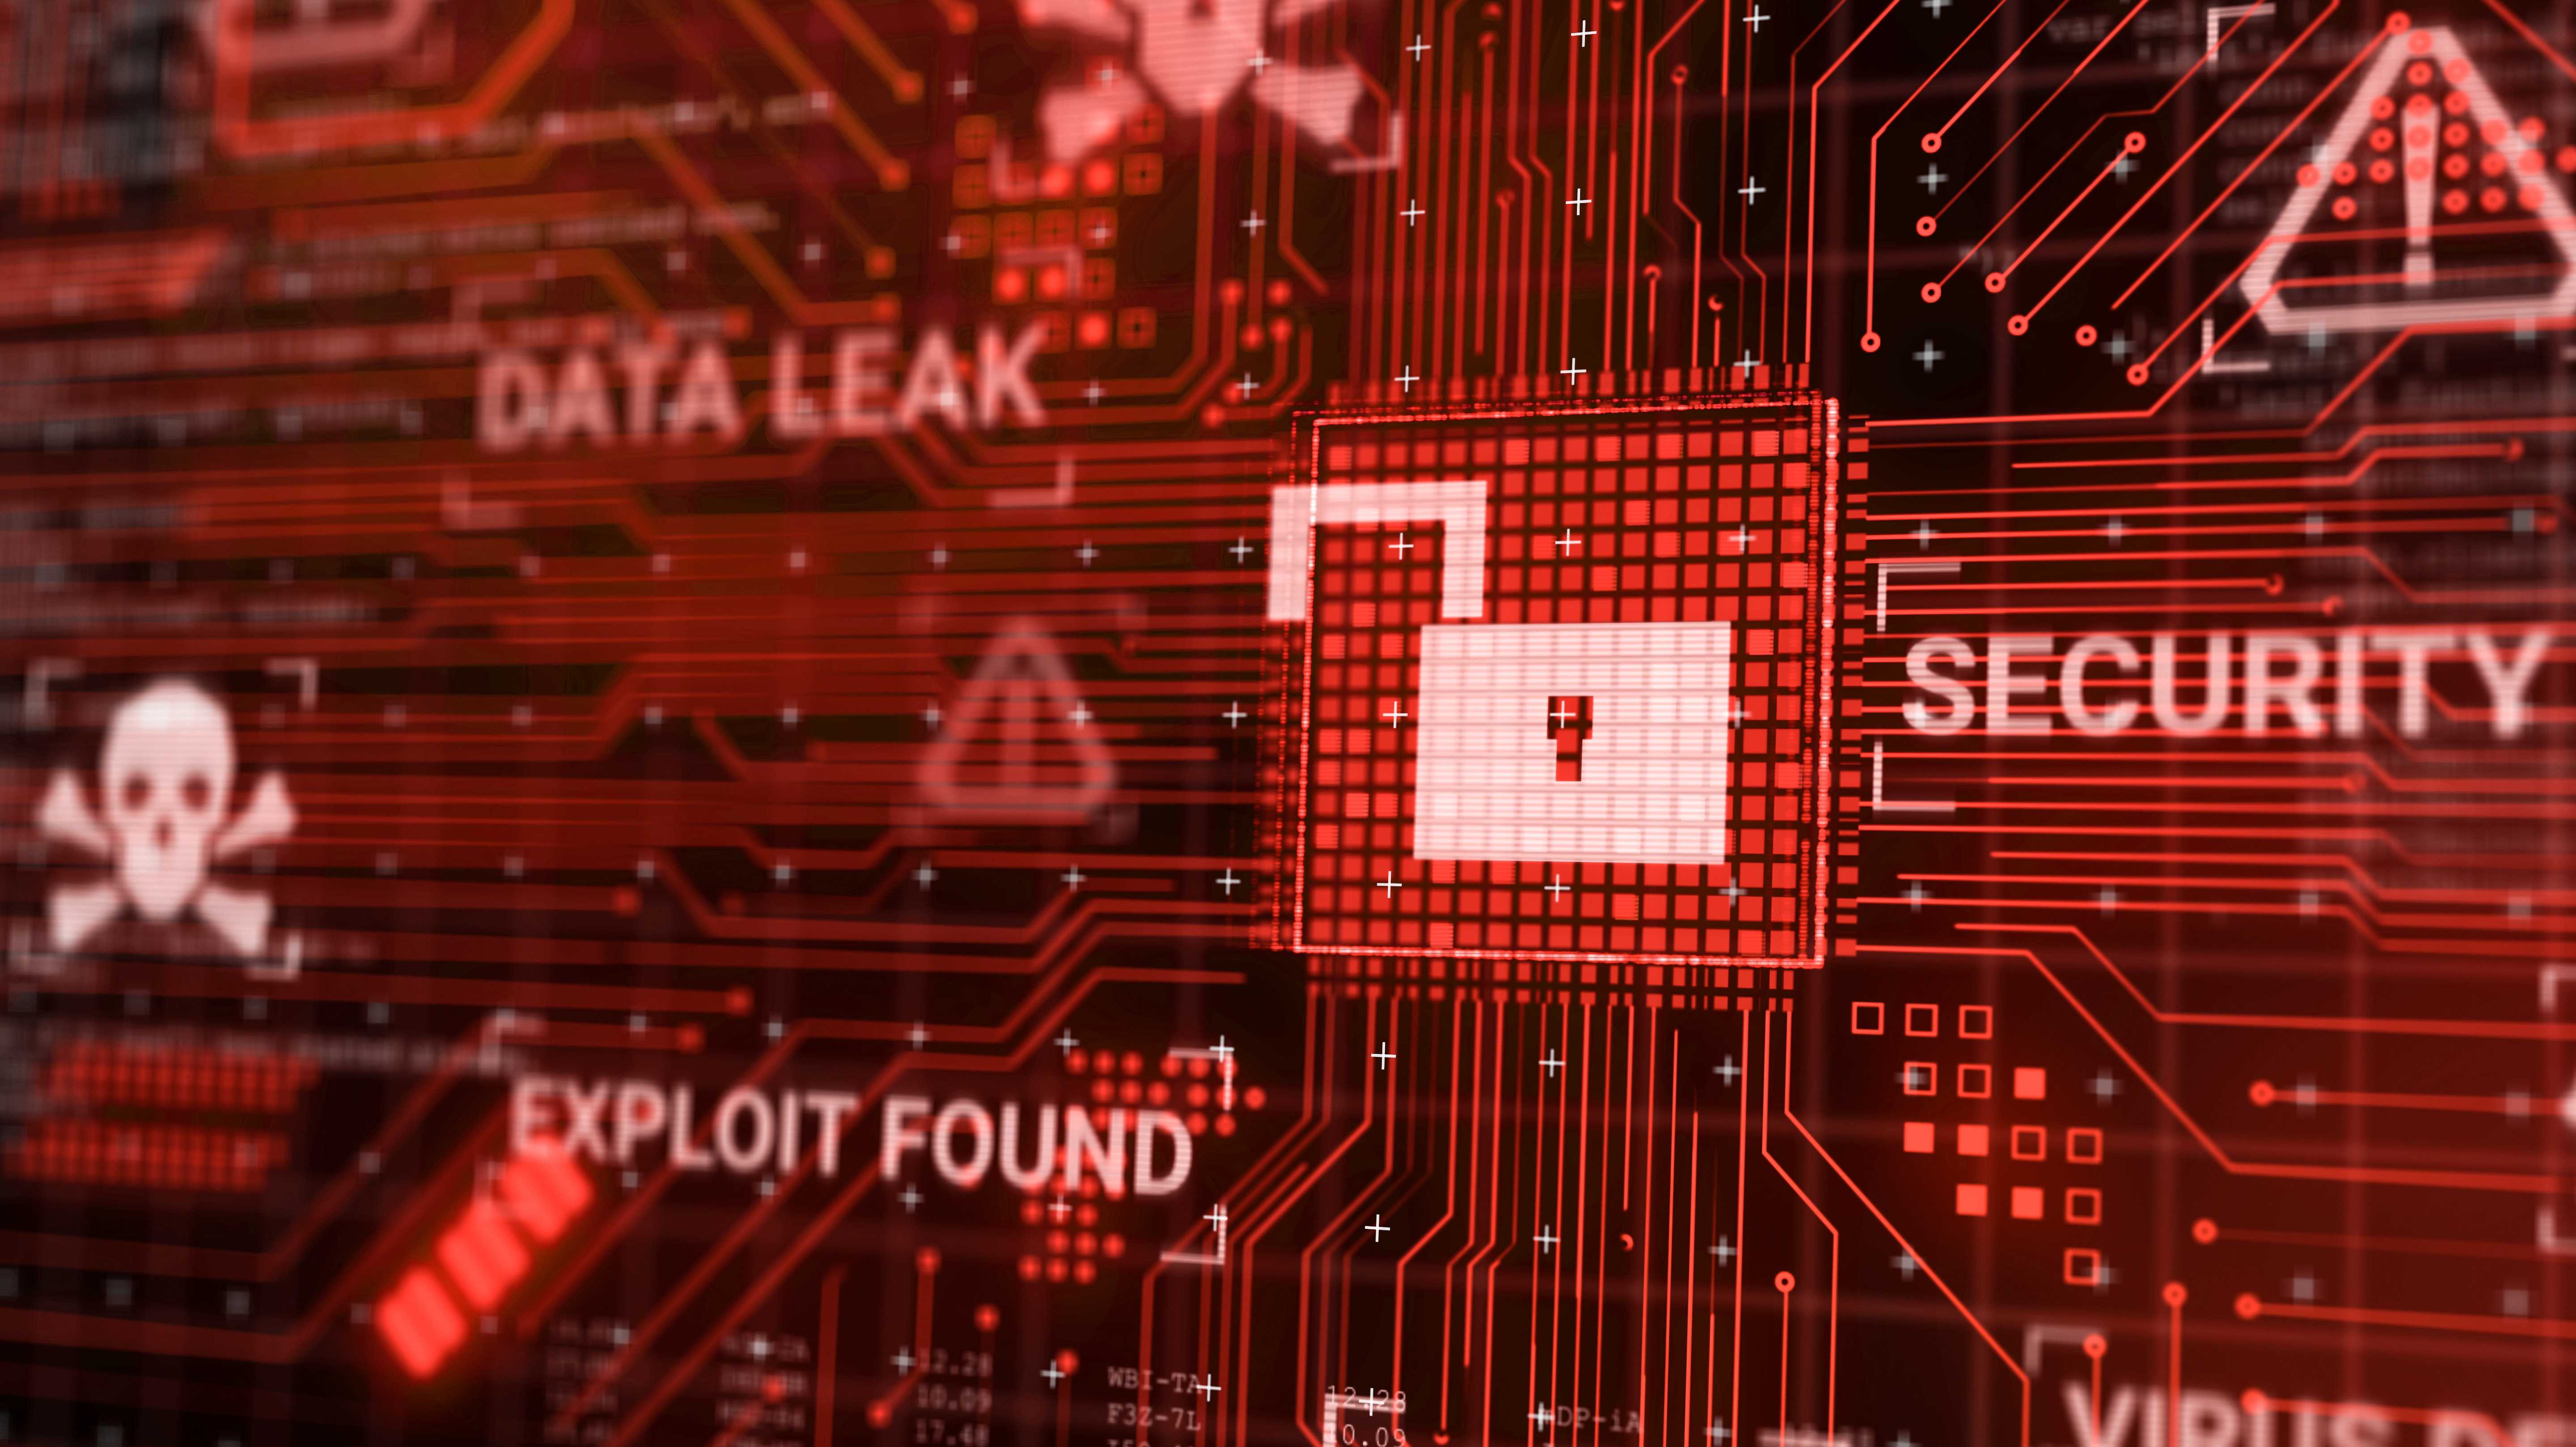 Stilisiertes Bild mit rötlichen Leiterbahnen, offenem Schloss im Vordergrund und den Worten Data Leak, Security, Exploit found